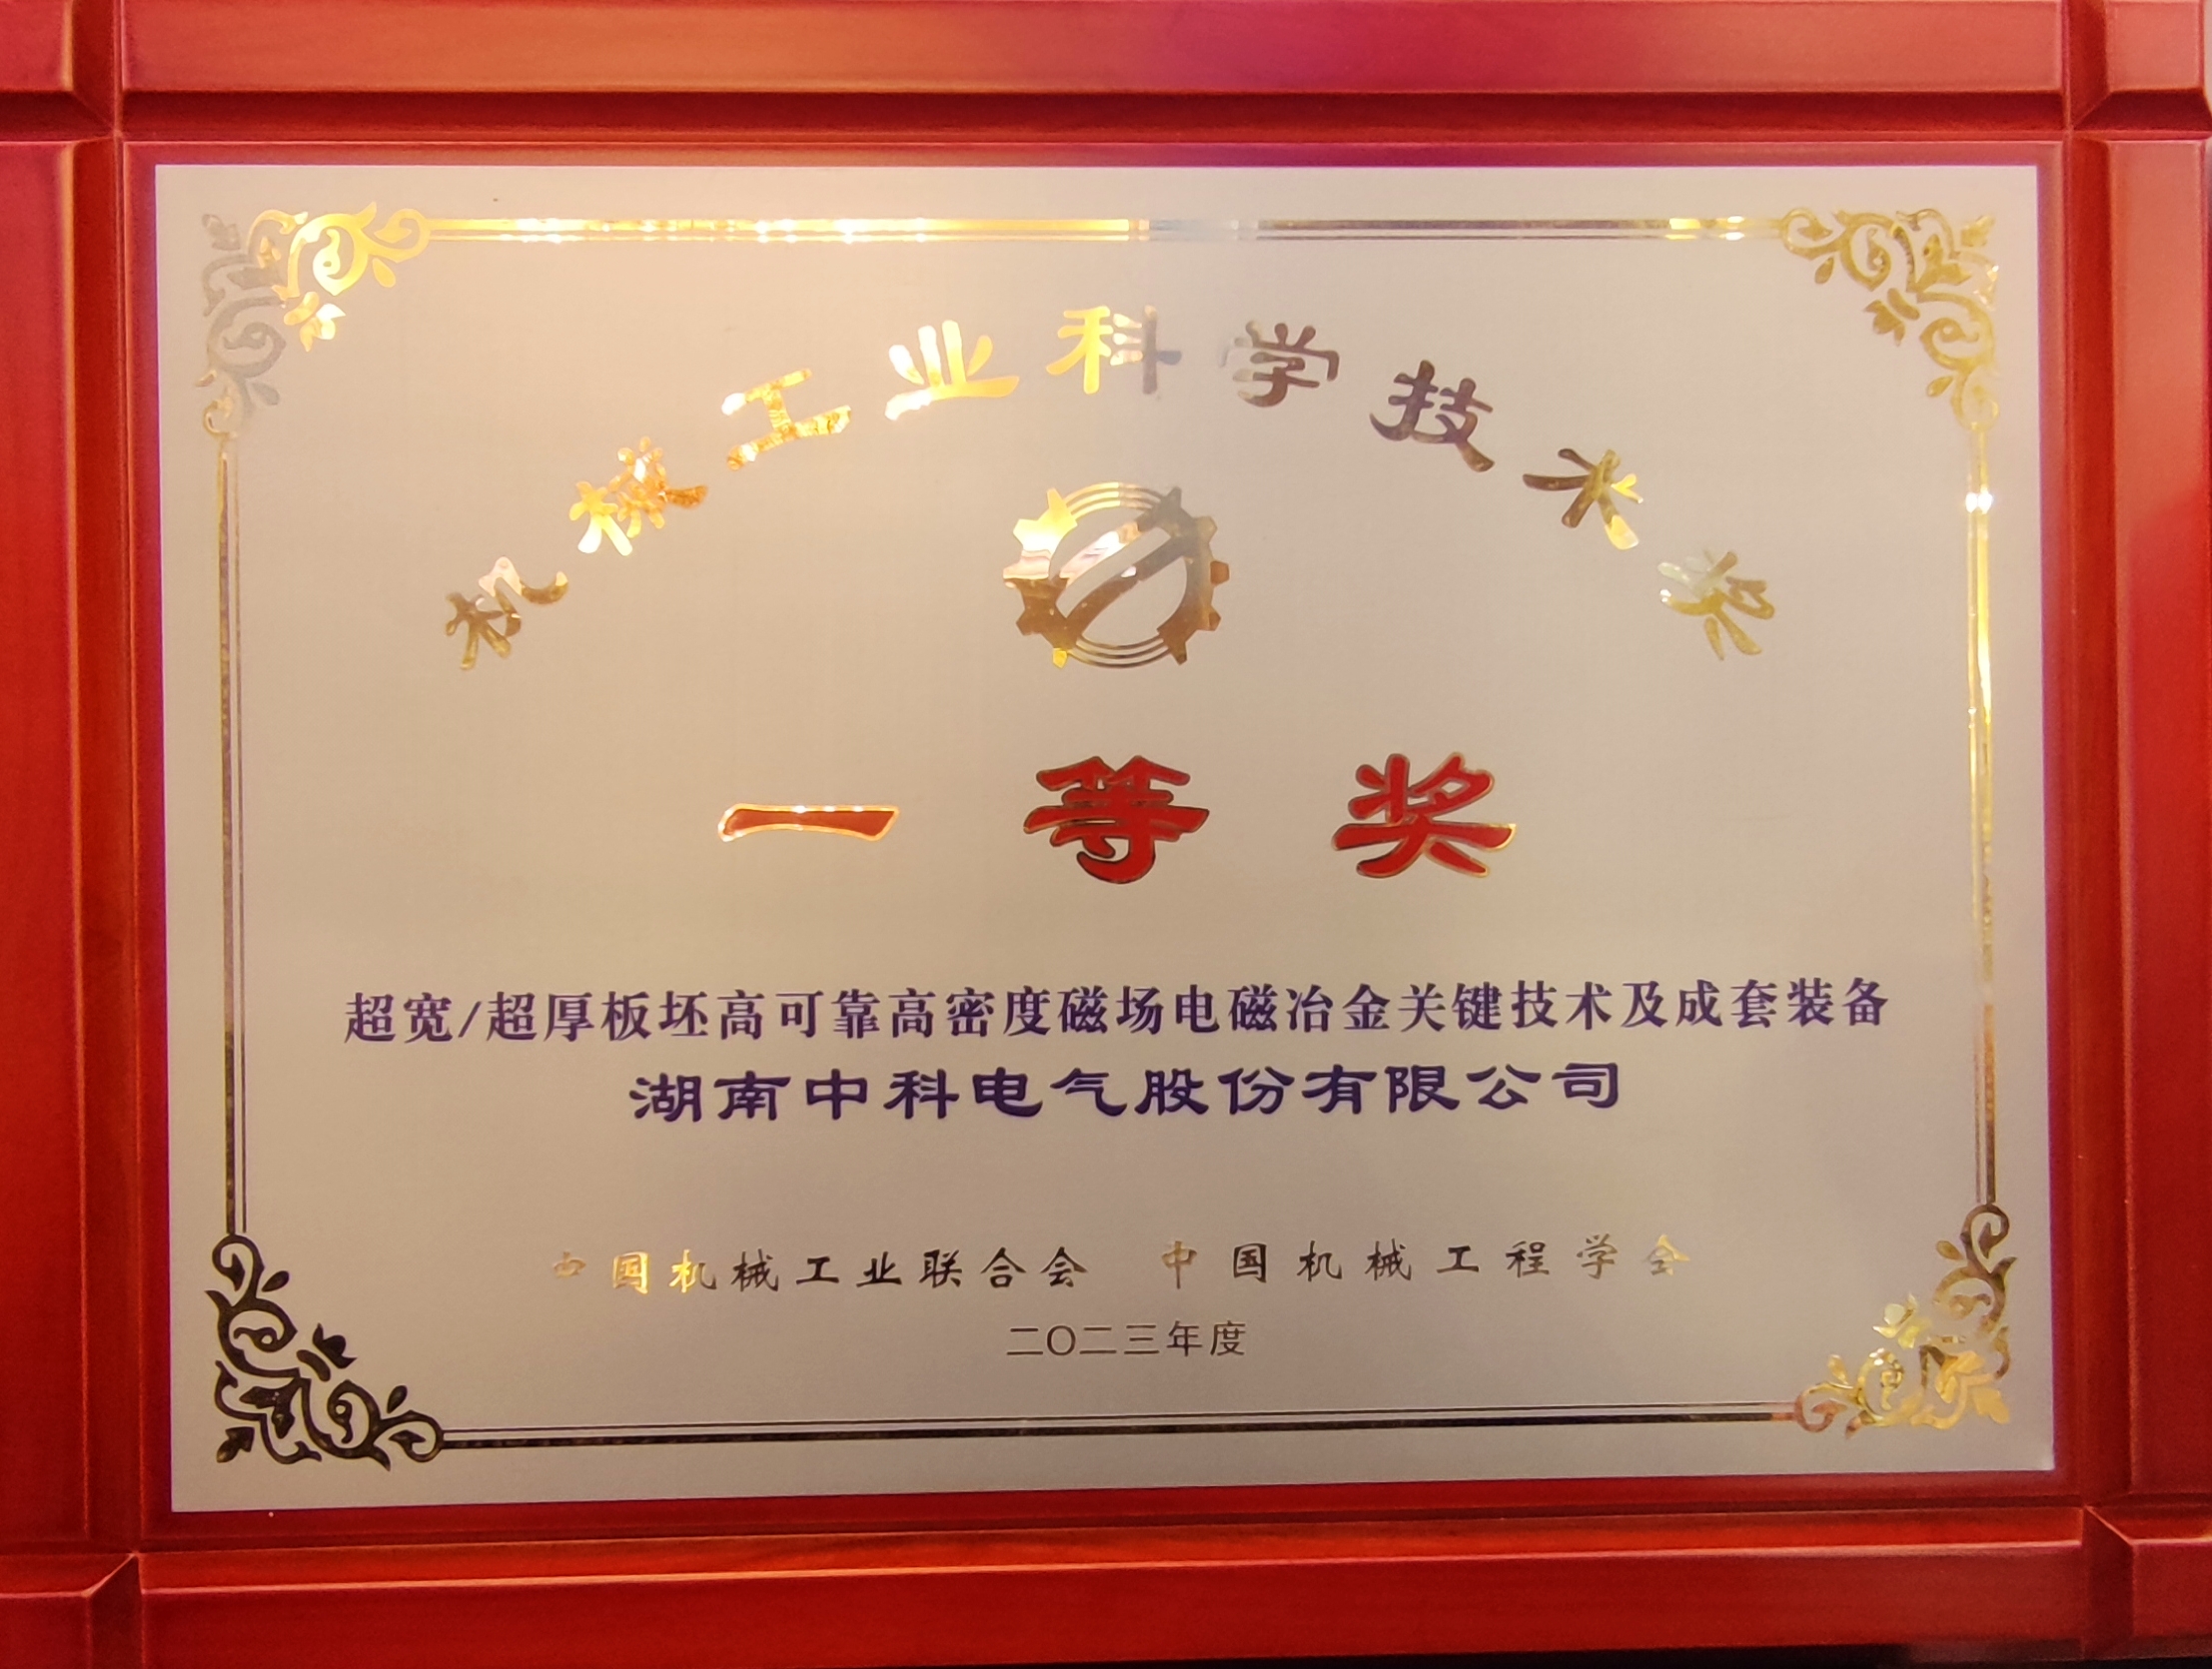 Zhongke Electric Won China Machinery Industry Science and Technology Progress Award First Award